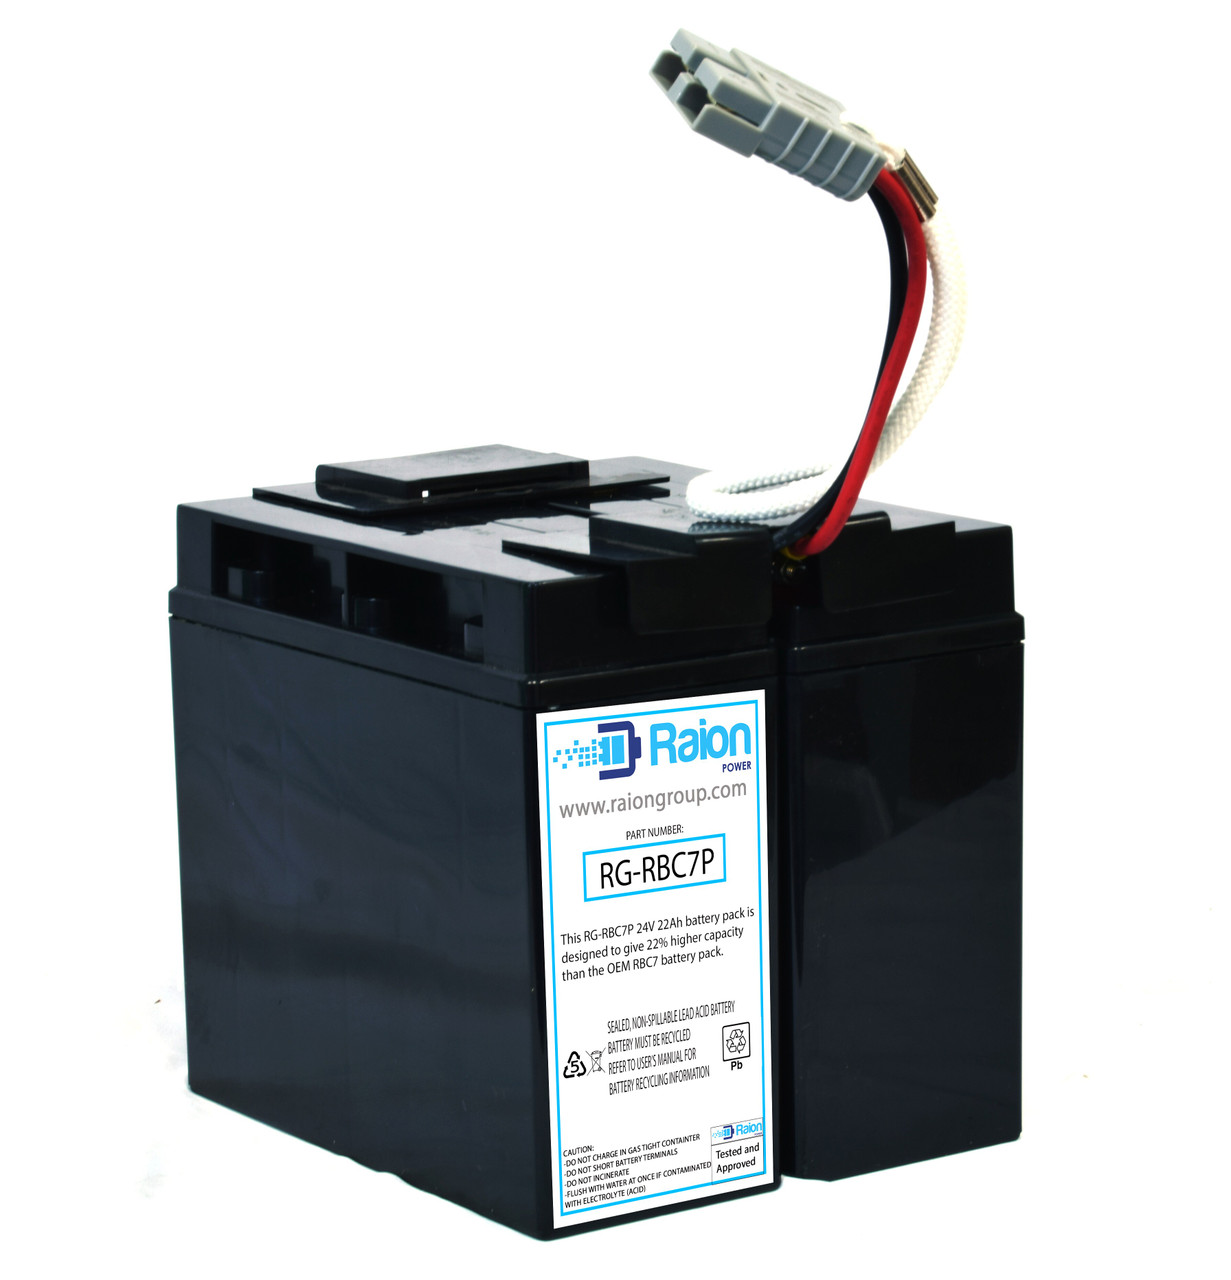 Raion Power RG-RBC7 Plus Replacement Battery Cartridge For APC SmartUPS 1400NET 